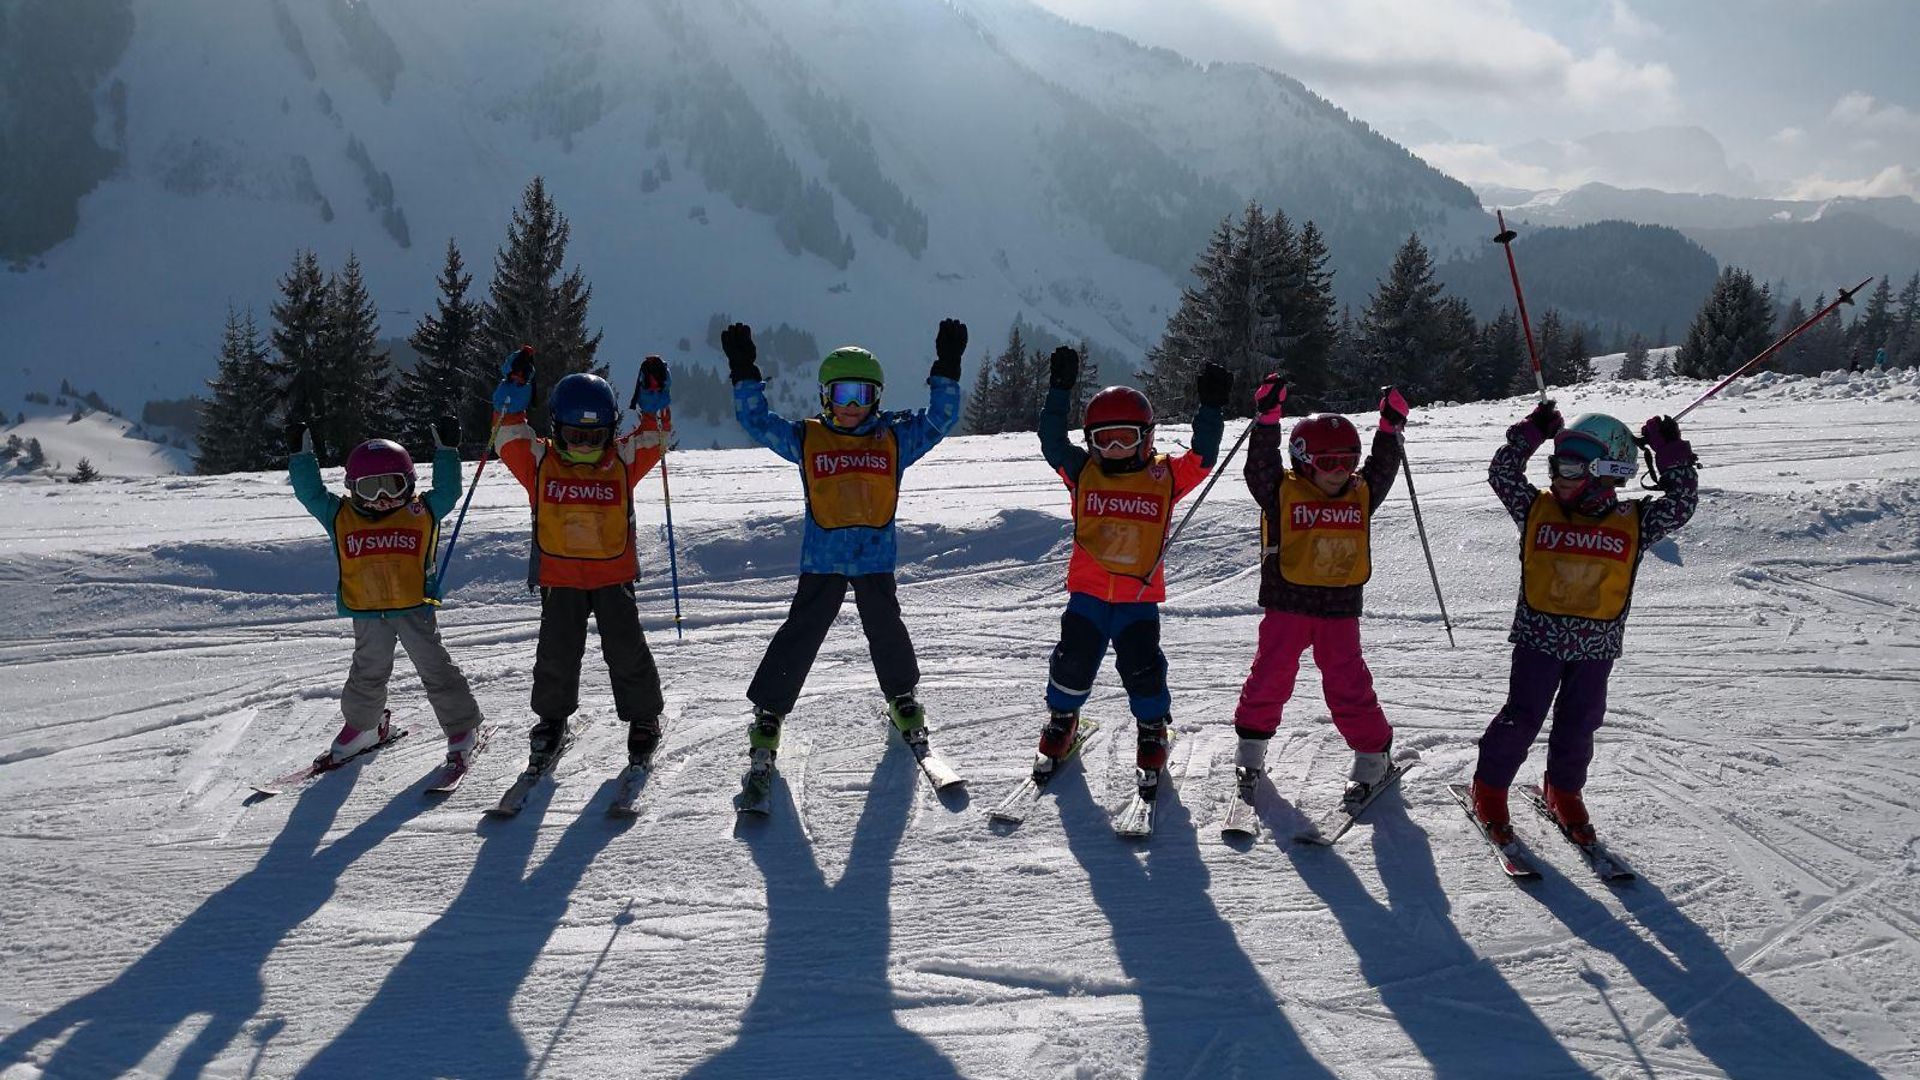 Les Mosses - Kinder während eines Kurses mit der Schweizer Skischule - Winter